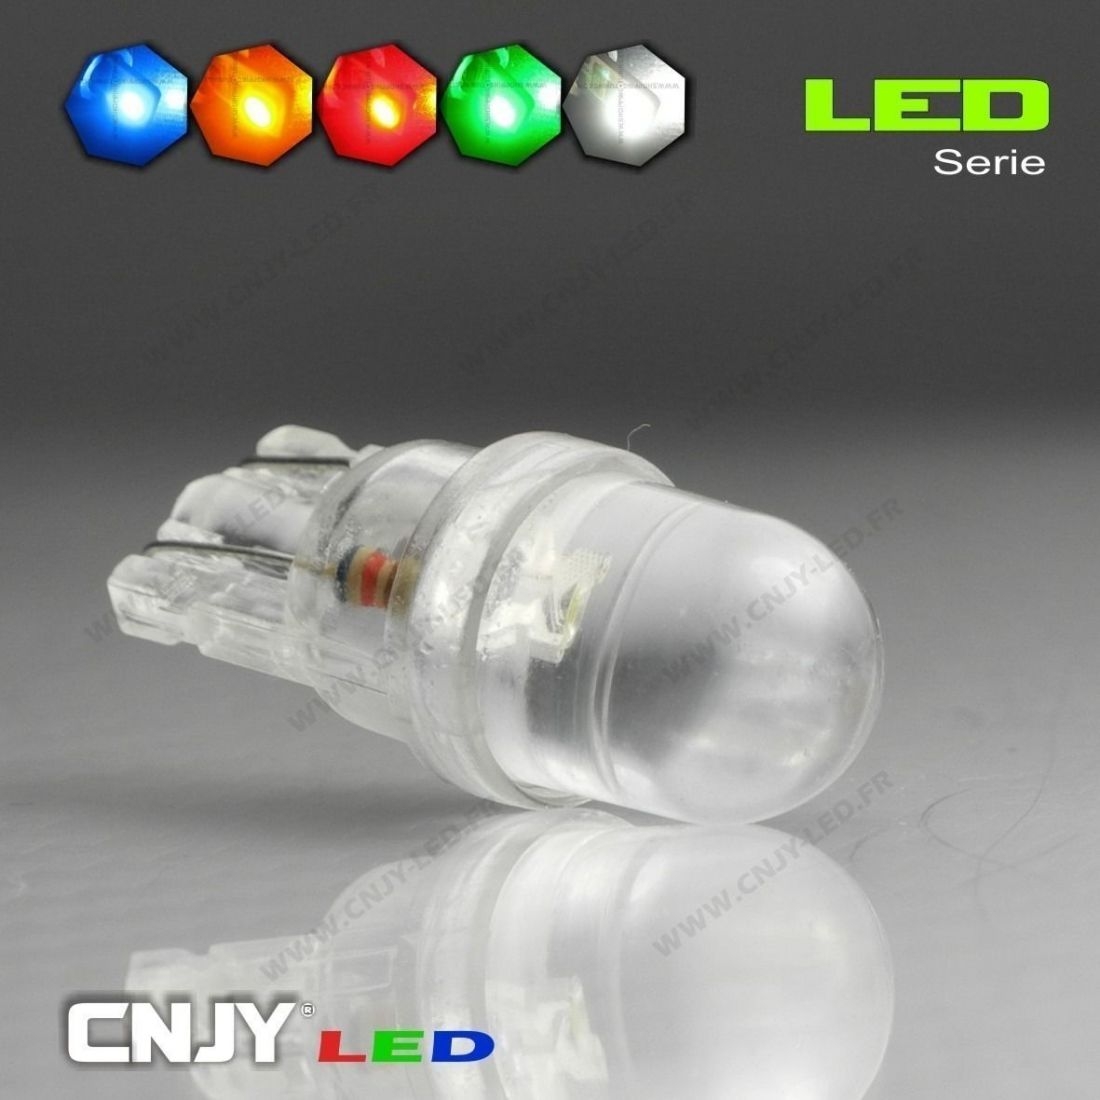 SL.GT Ampoules LED Voiture T10 W5W 12v Clair Fibre de Verre Avertissement  Ampoule Largeur Super Lumineux LED Cté Lumière,10PCS